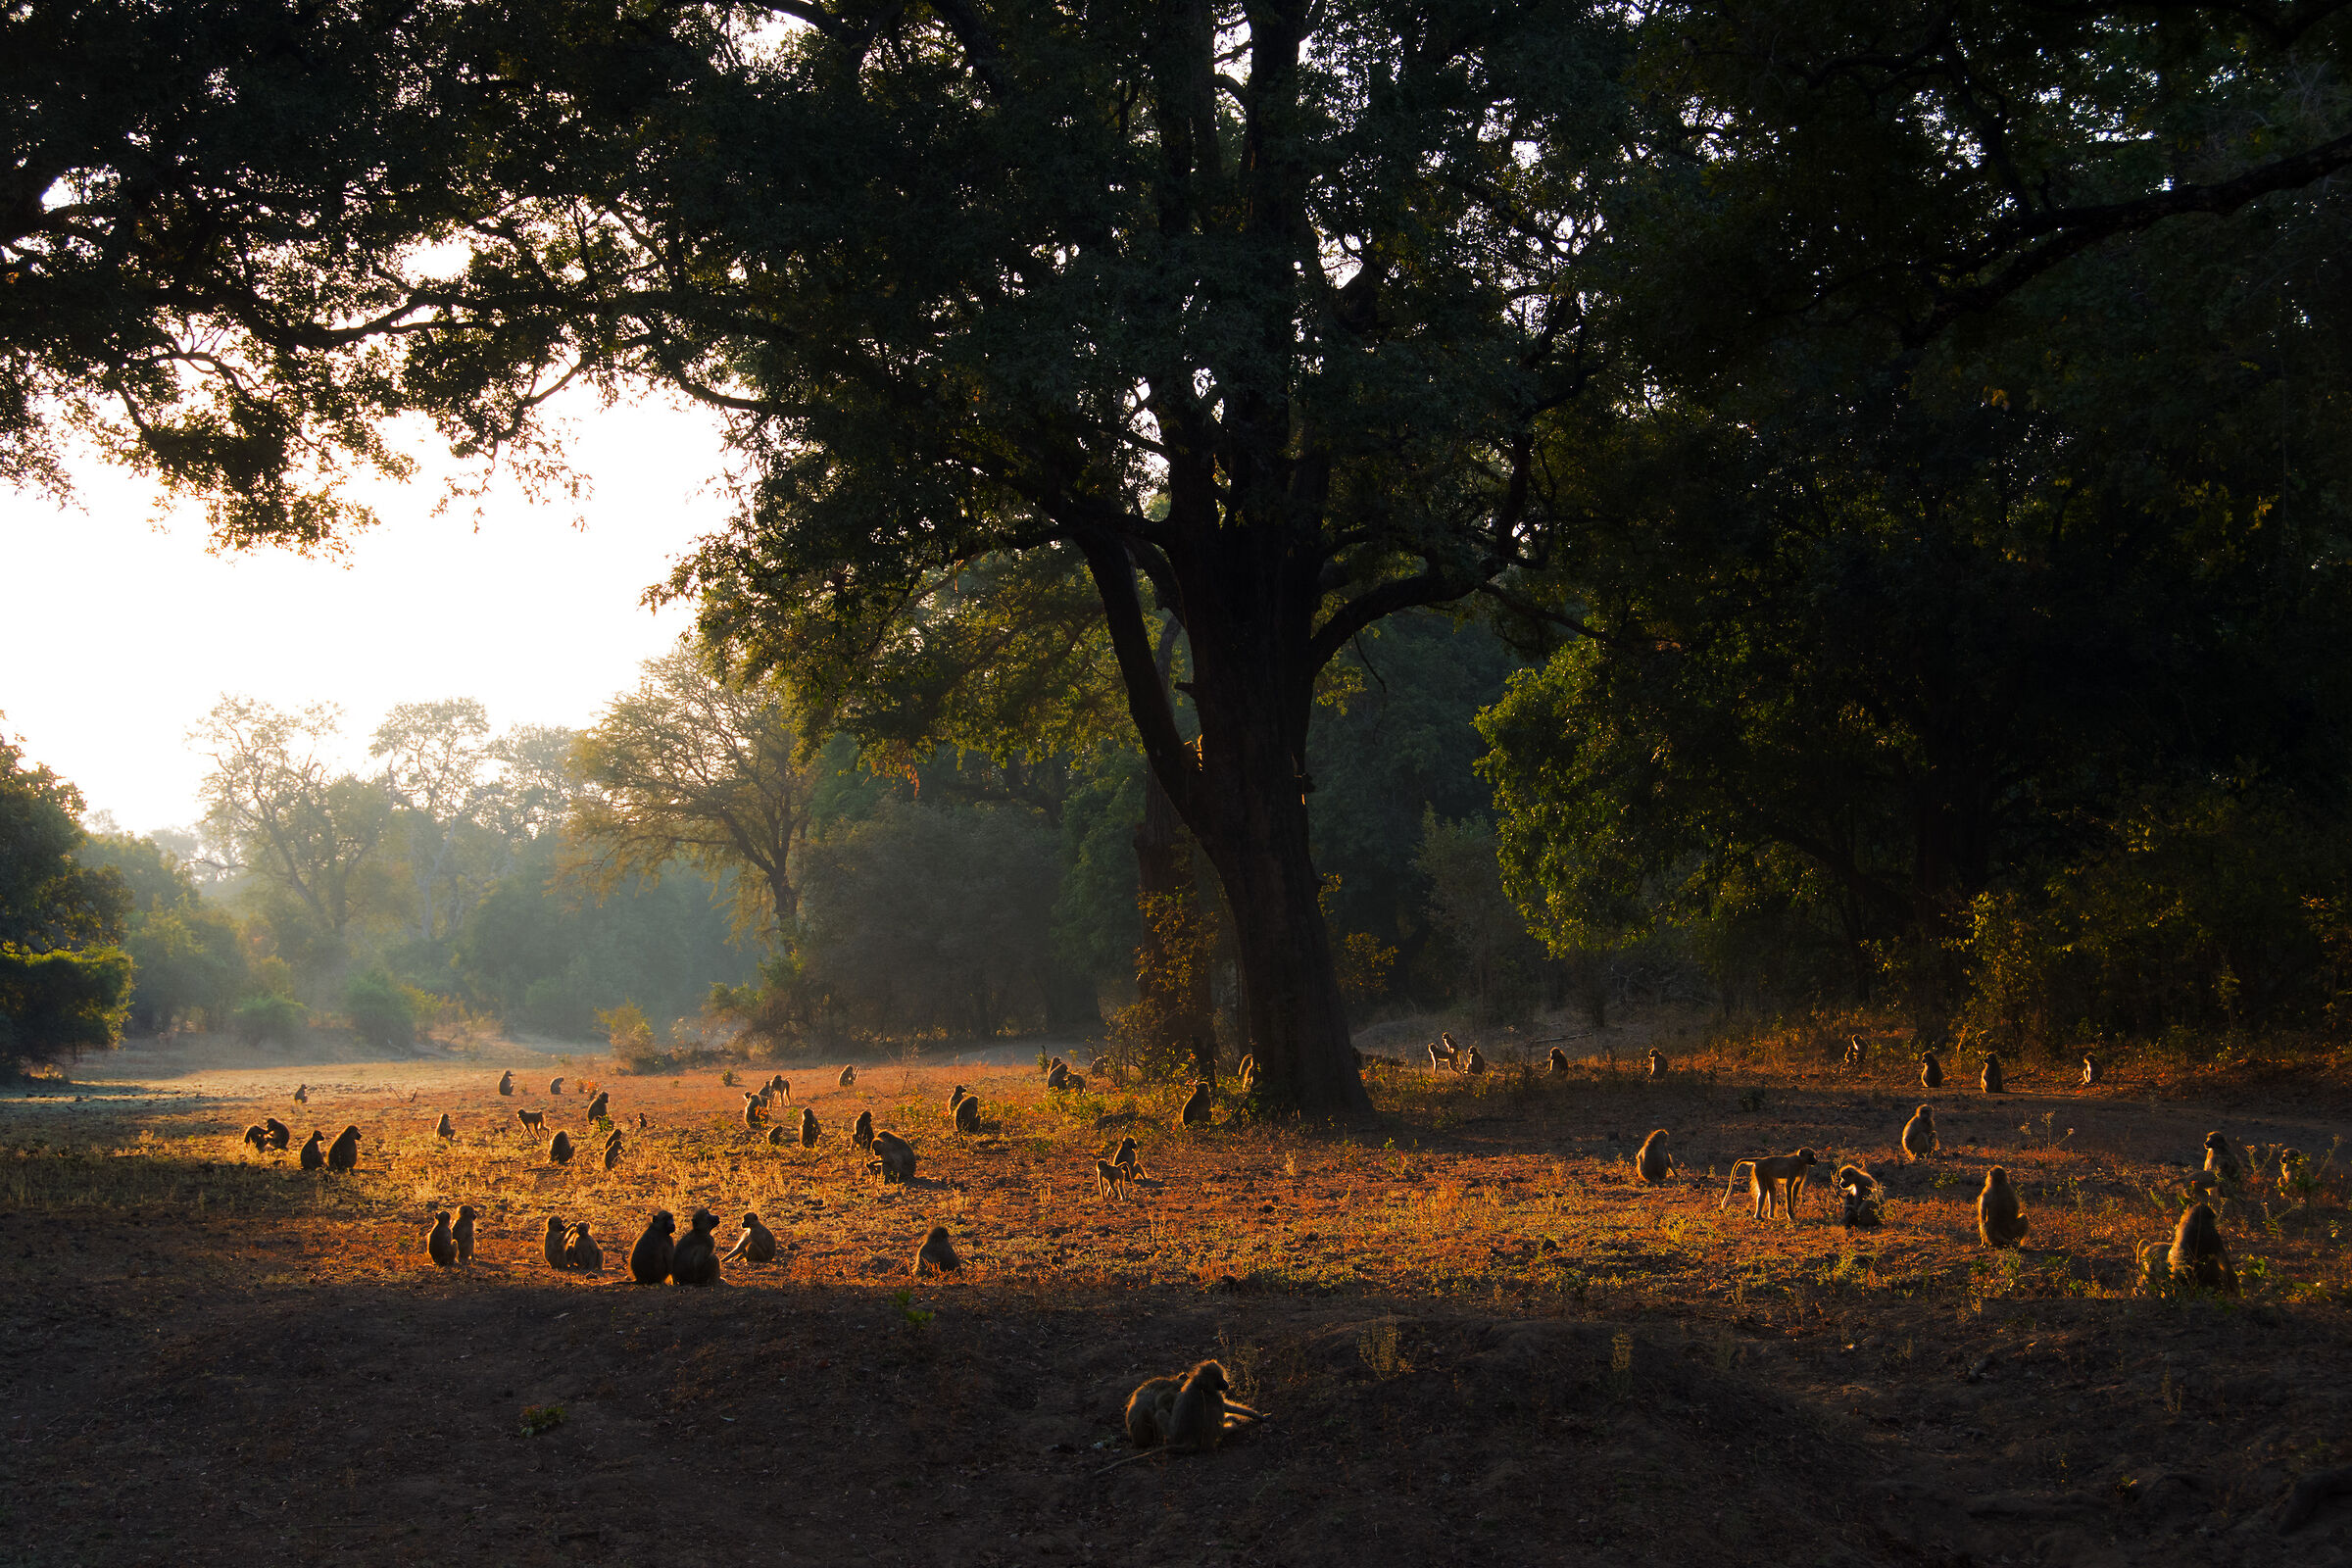 Yellow baboons (Zambia)...